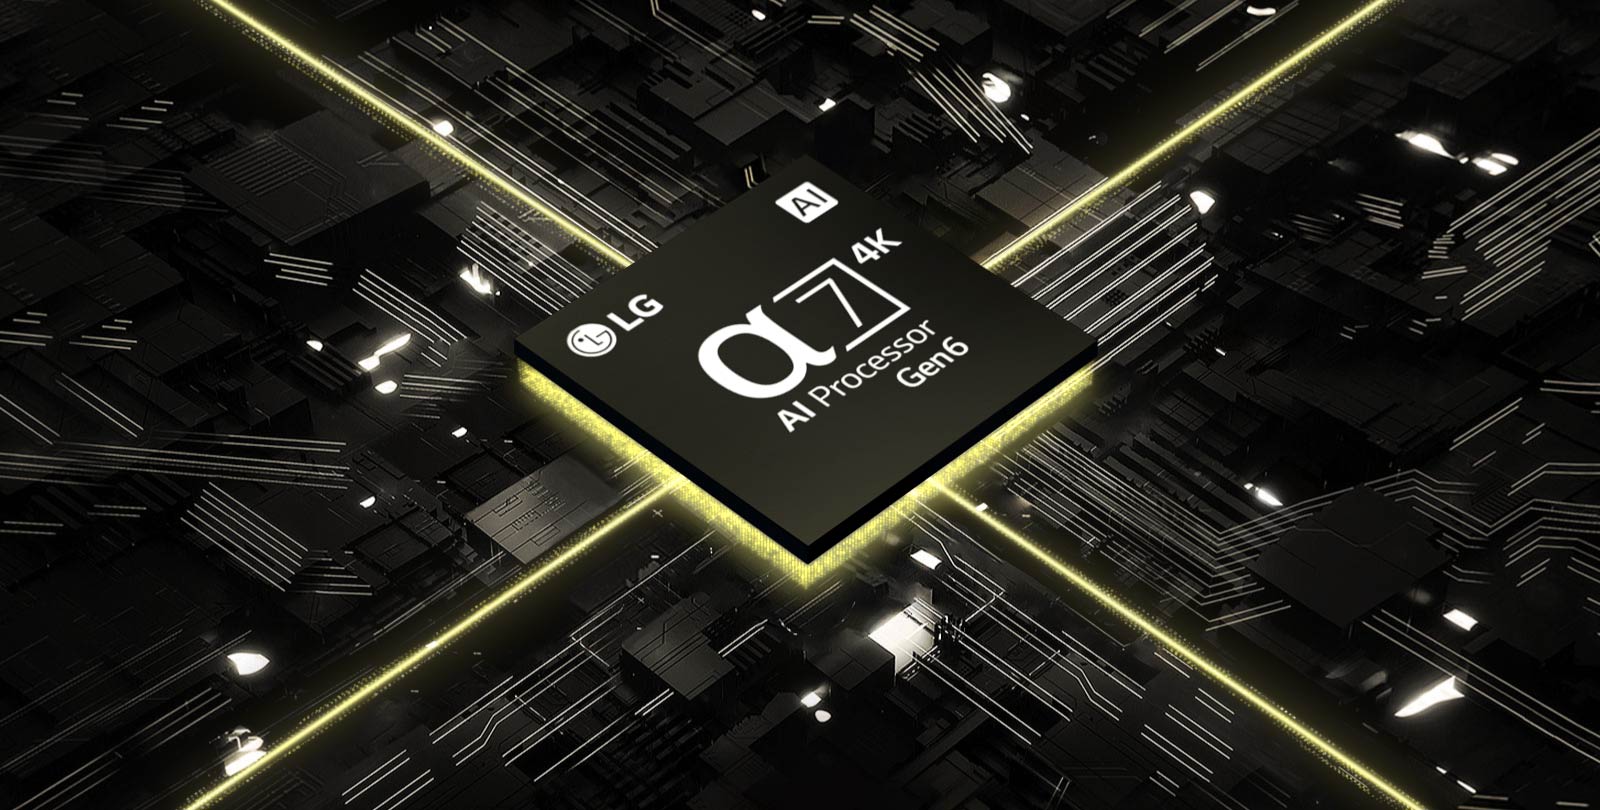 Na videu je vyobrazen procesor α7 4K Gen6 AI vedle desky plošných spojů. Deska se rozsvítí a z čipu začnou vyzařovat žluté světelné paprsky, které představují jeho sílu.